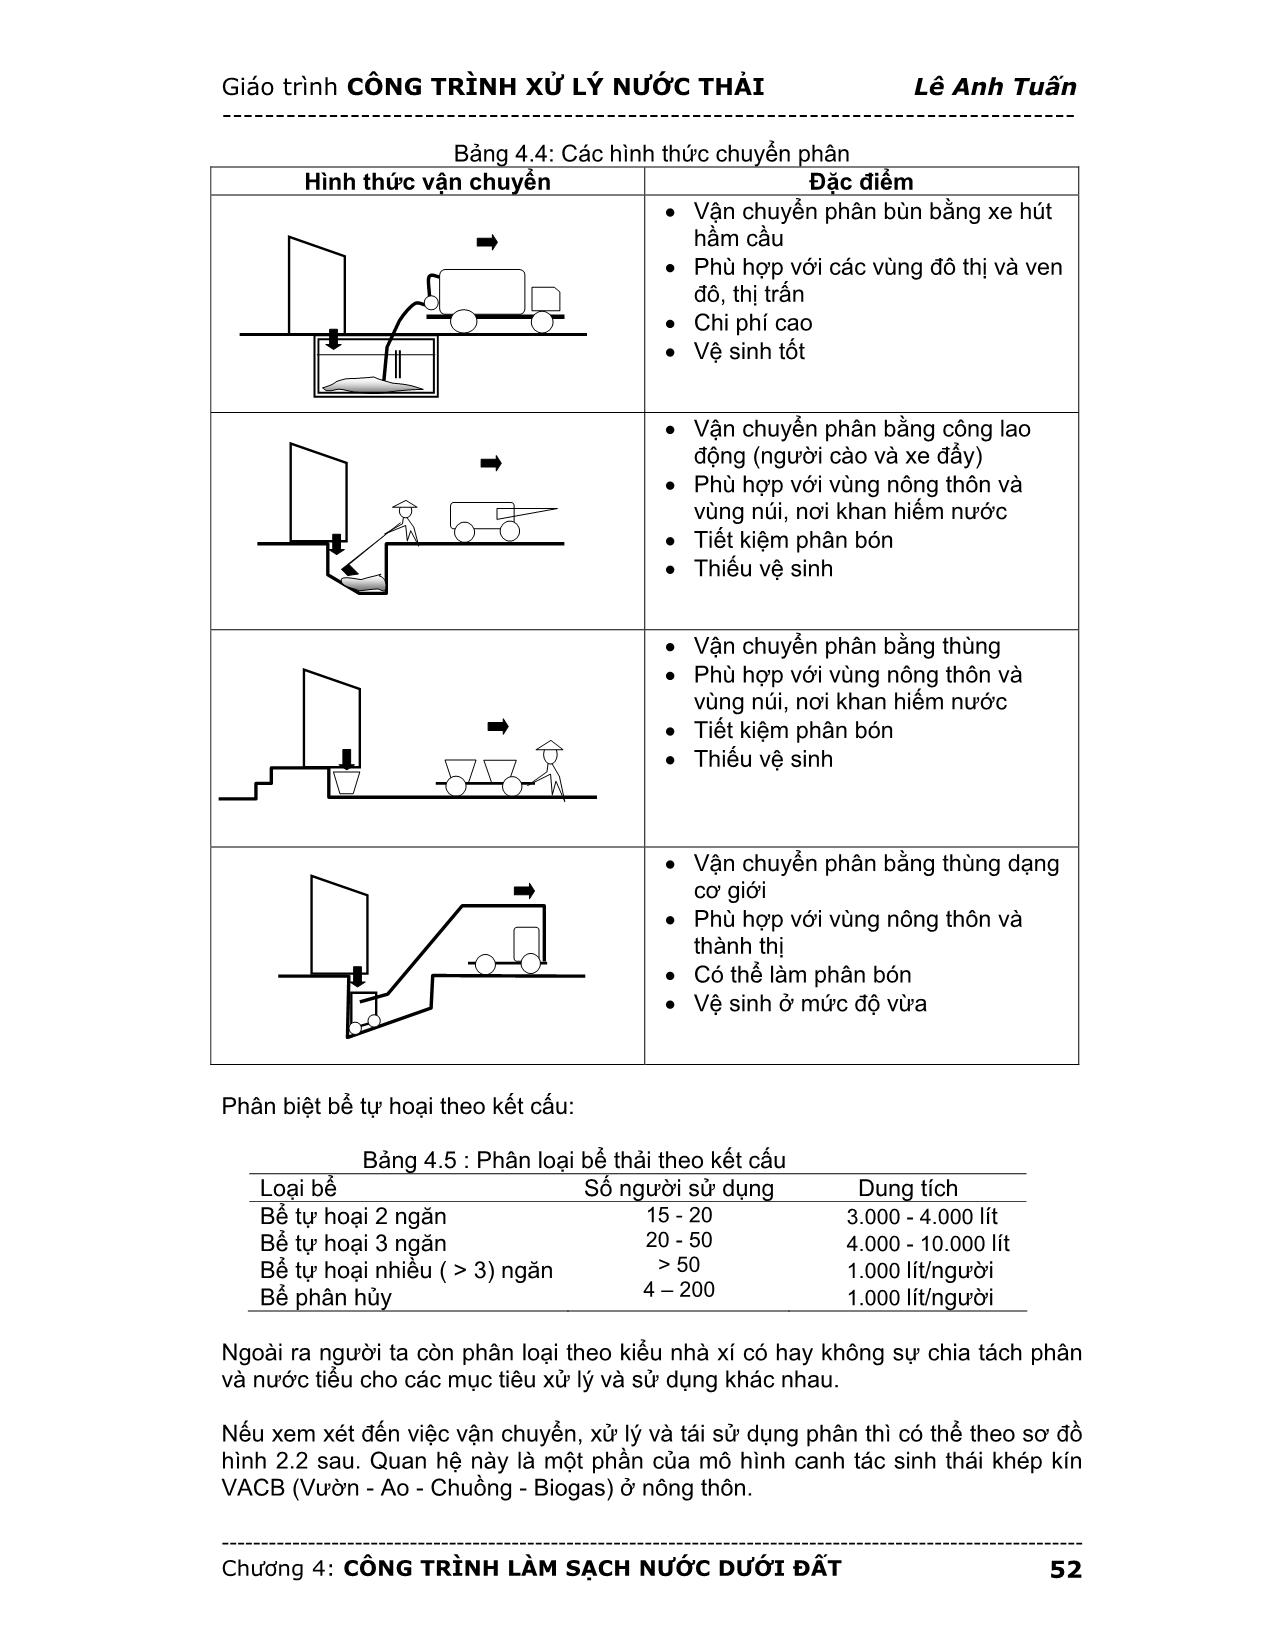 Giáo trình Công trình xử lý nước thải (Phần 2) trang 5